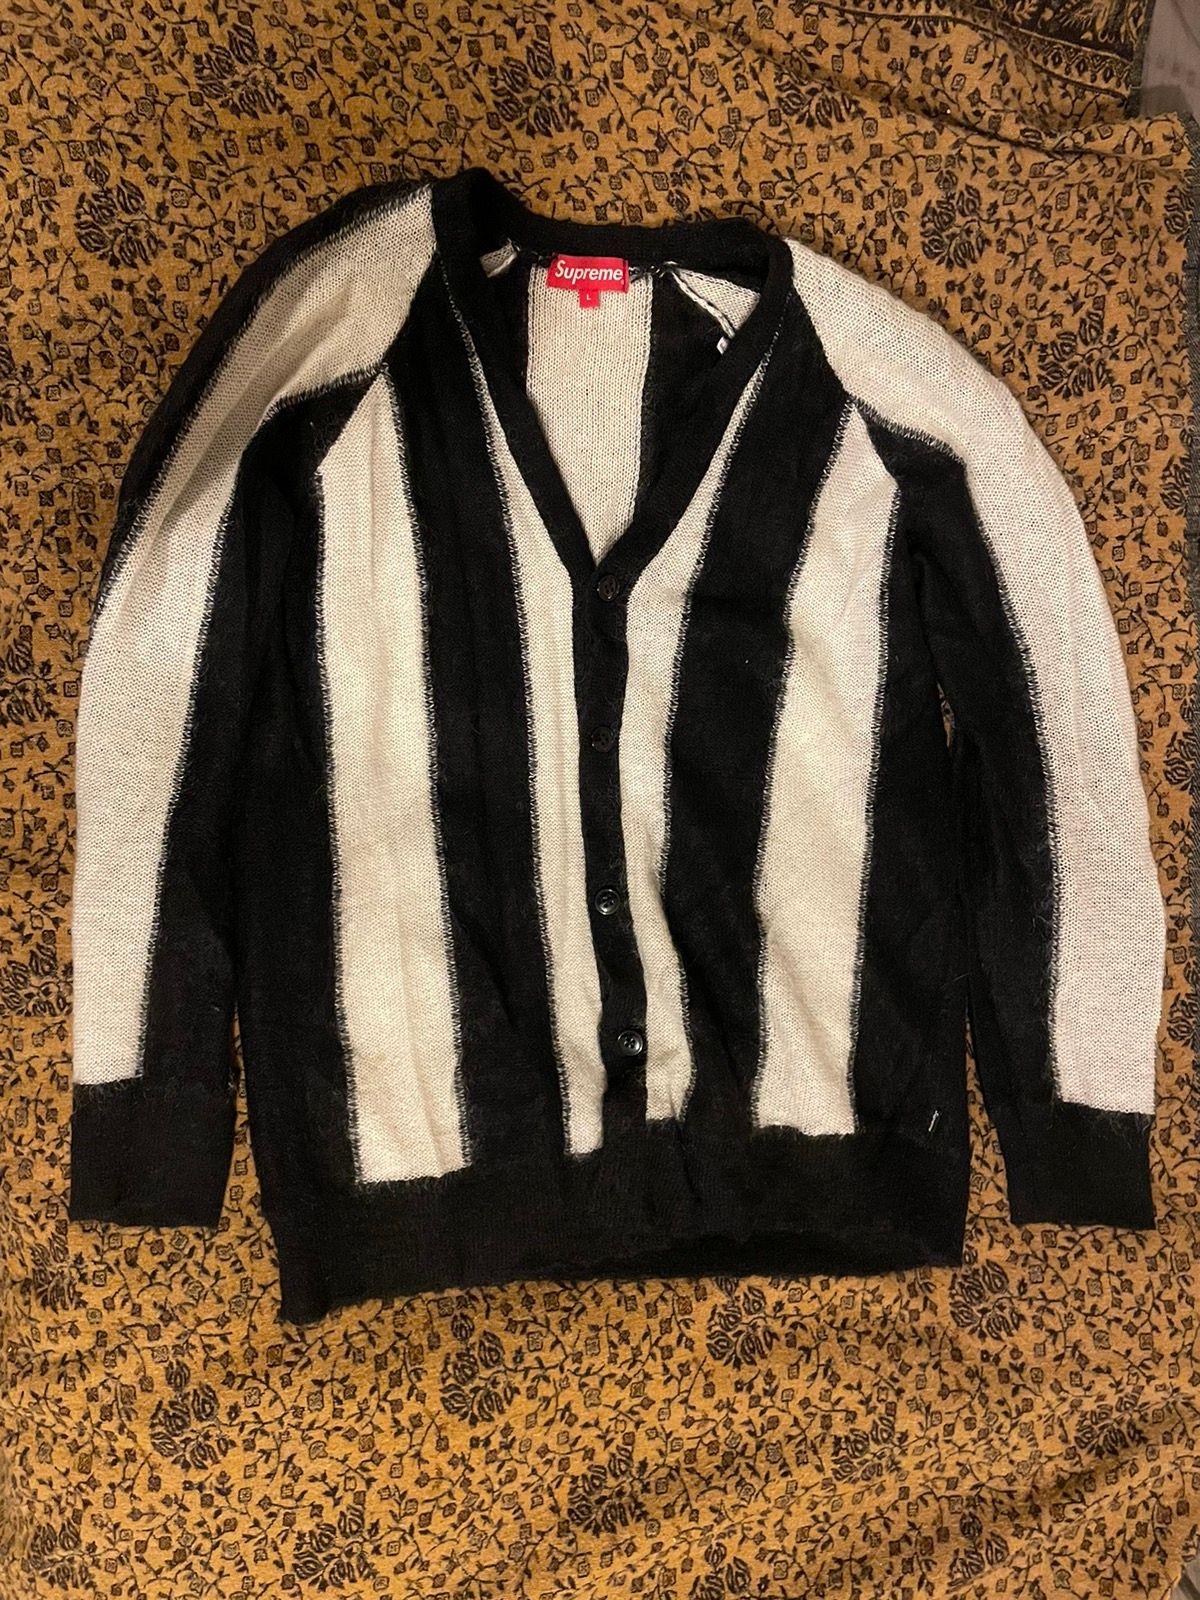 Supreme Supreme Mohair Sweater Black/White | Grailed